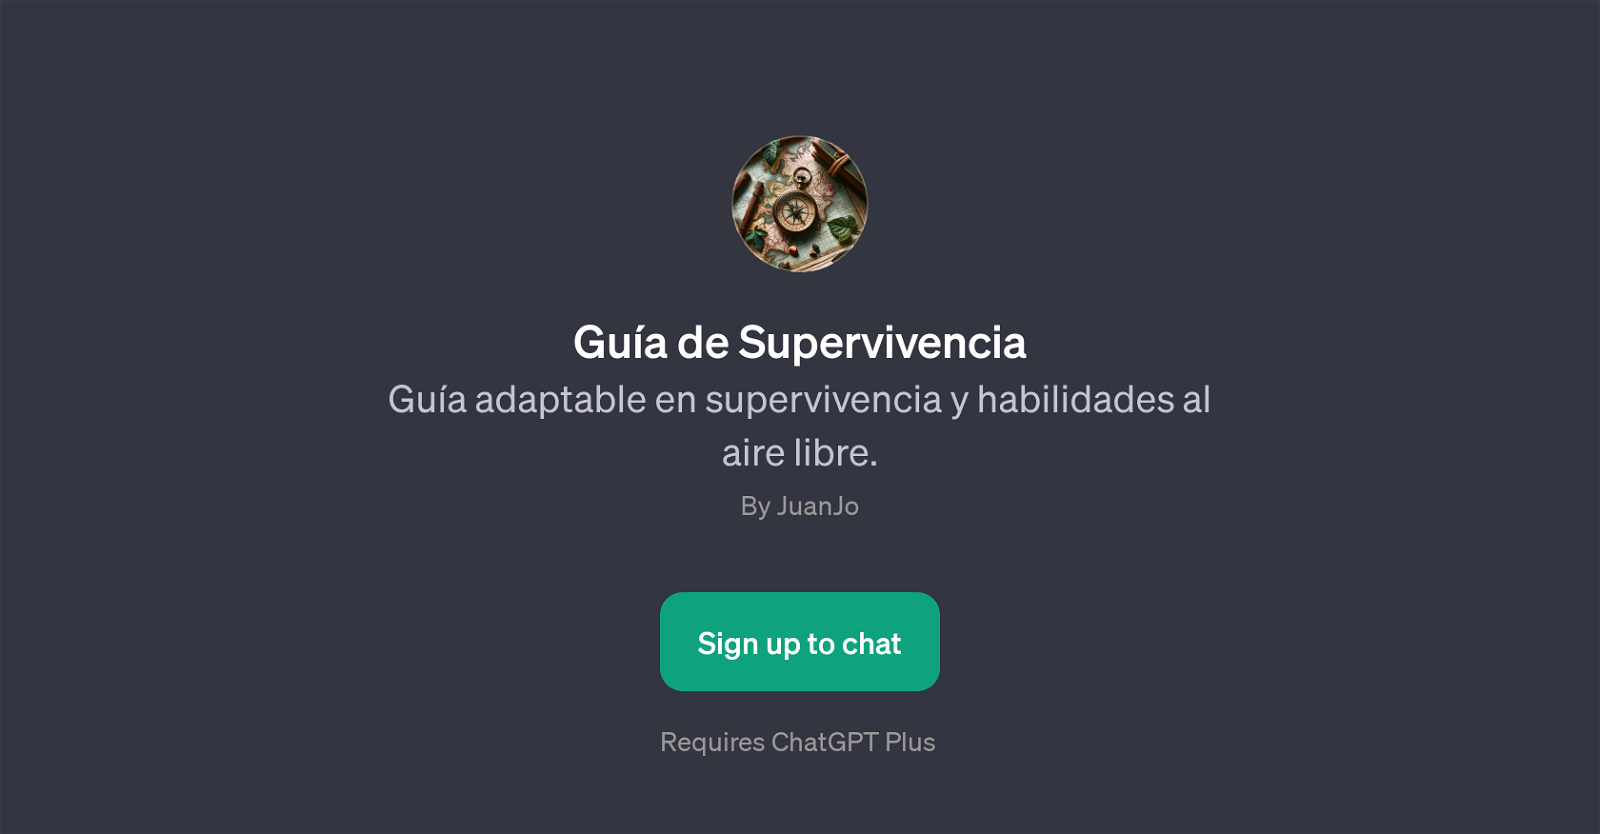 Gua de Supervivencia website